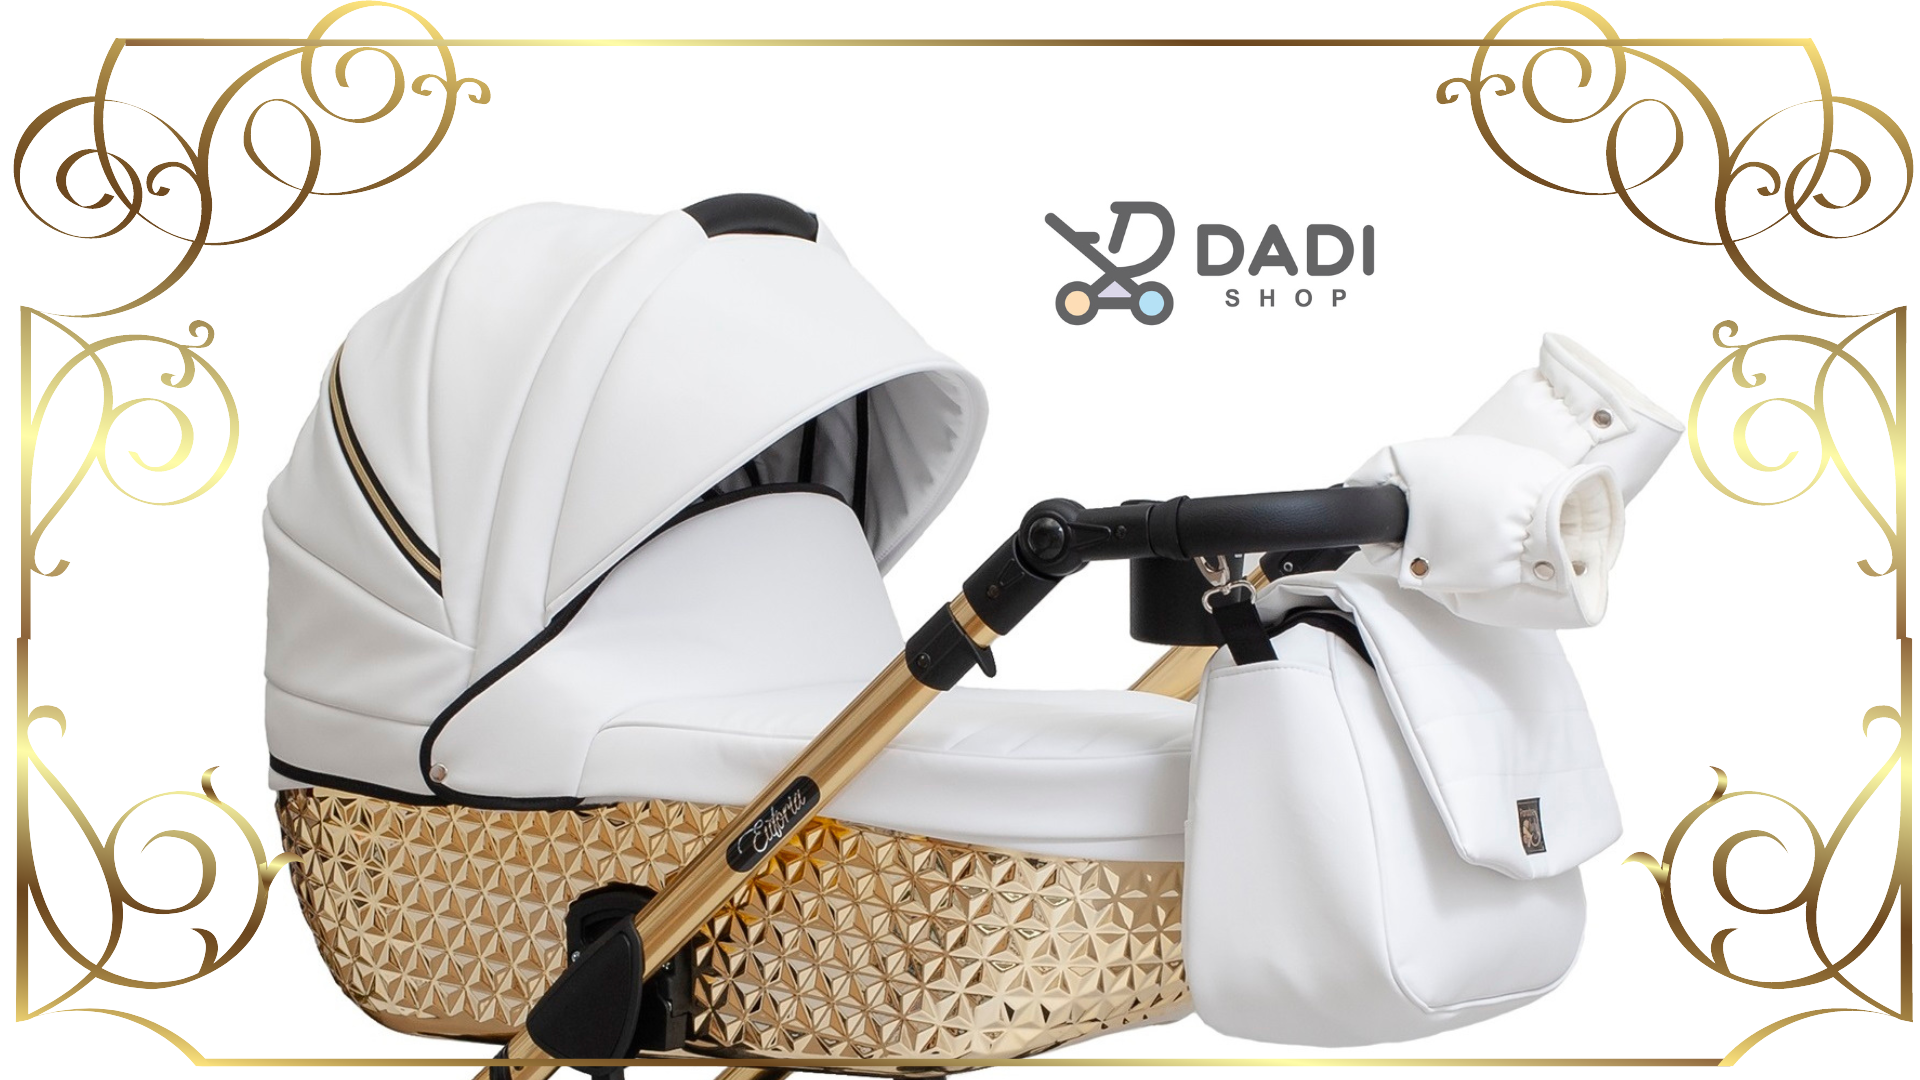 wózek euforia comfort line paradise baby wielofunkcyjny dziecie cy Dadi shop